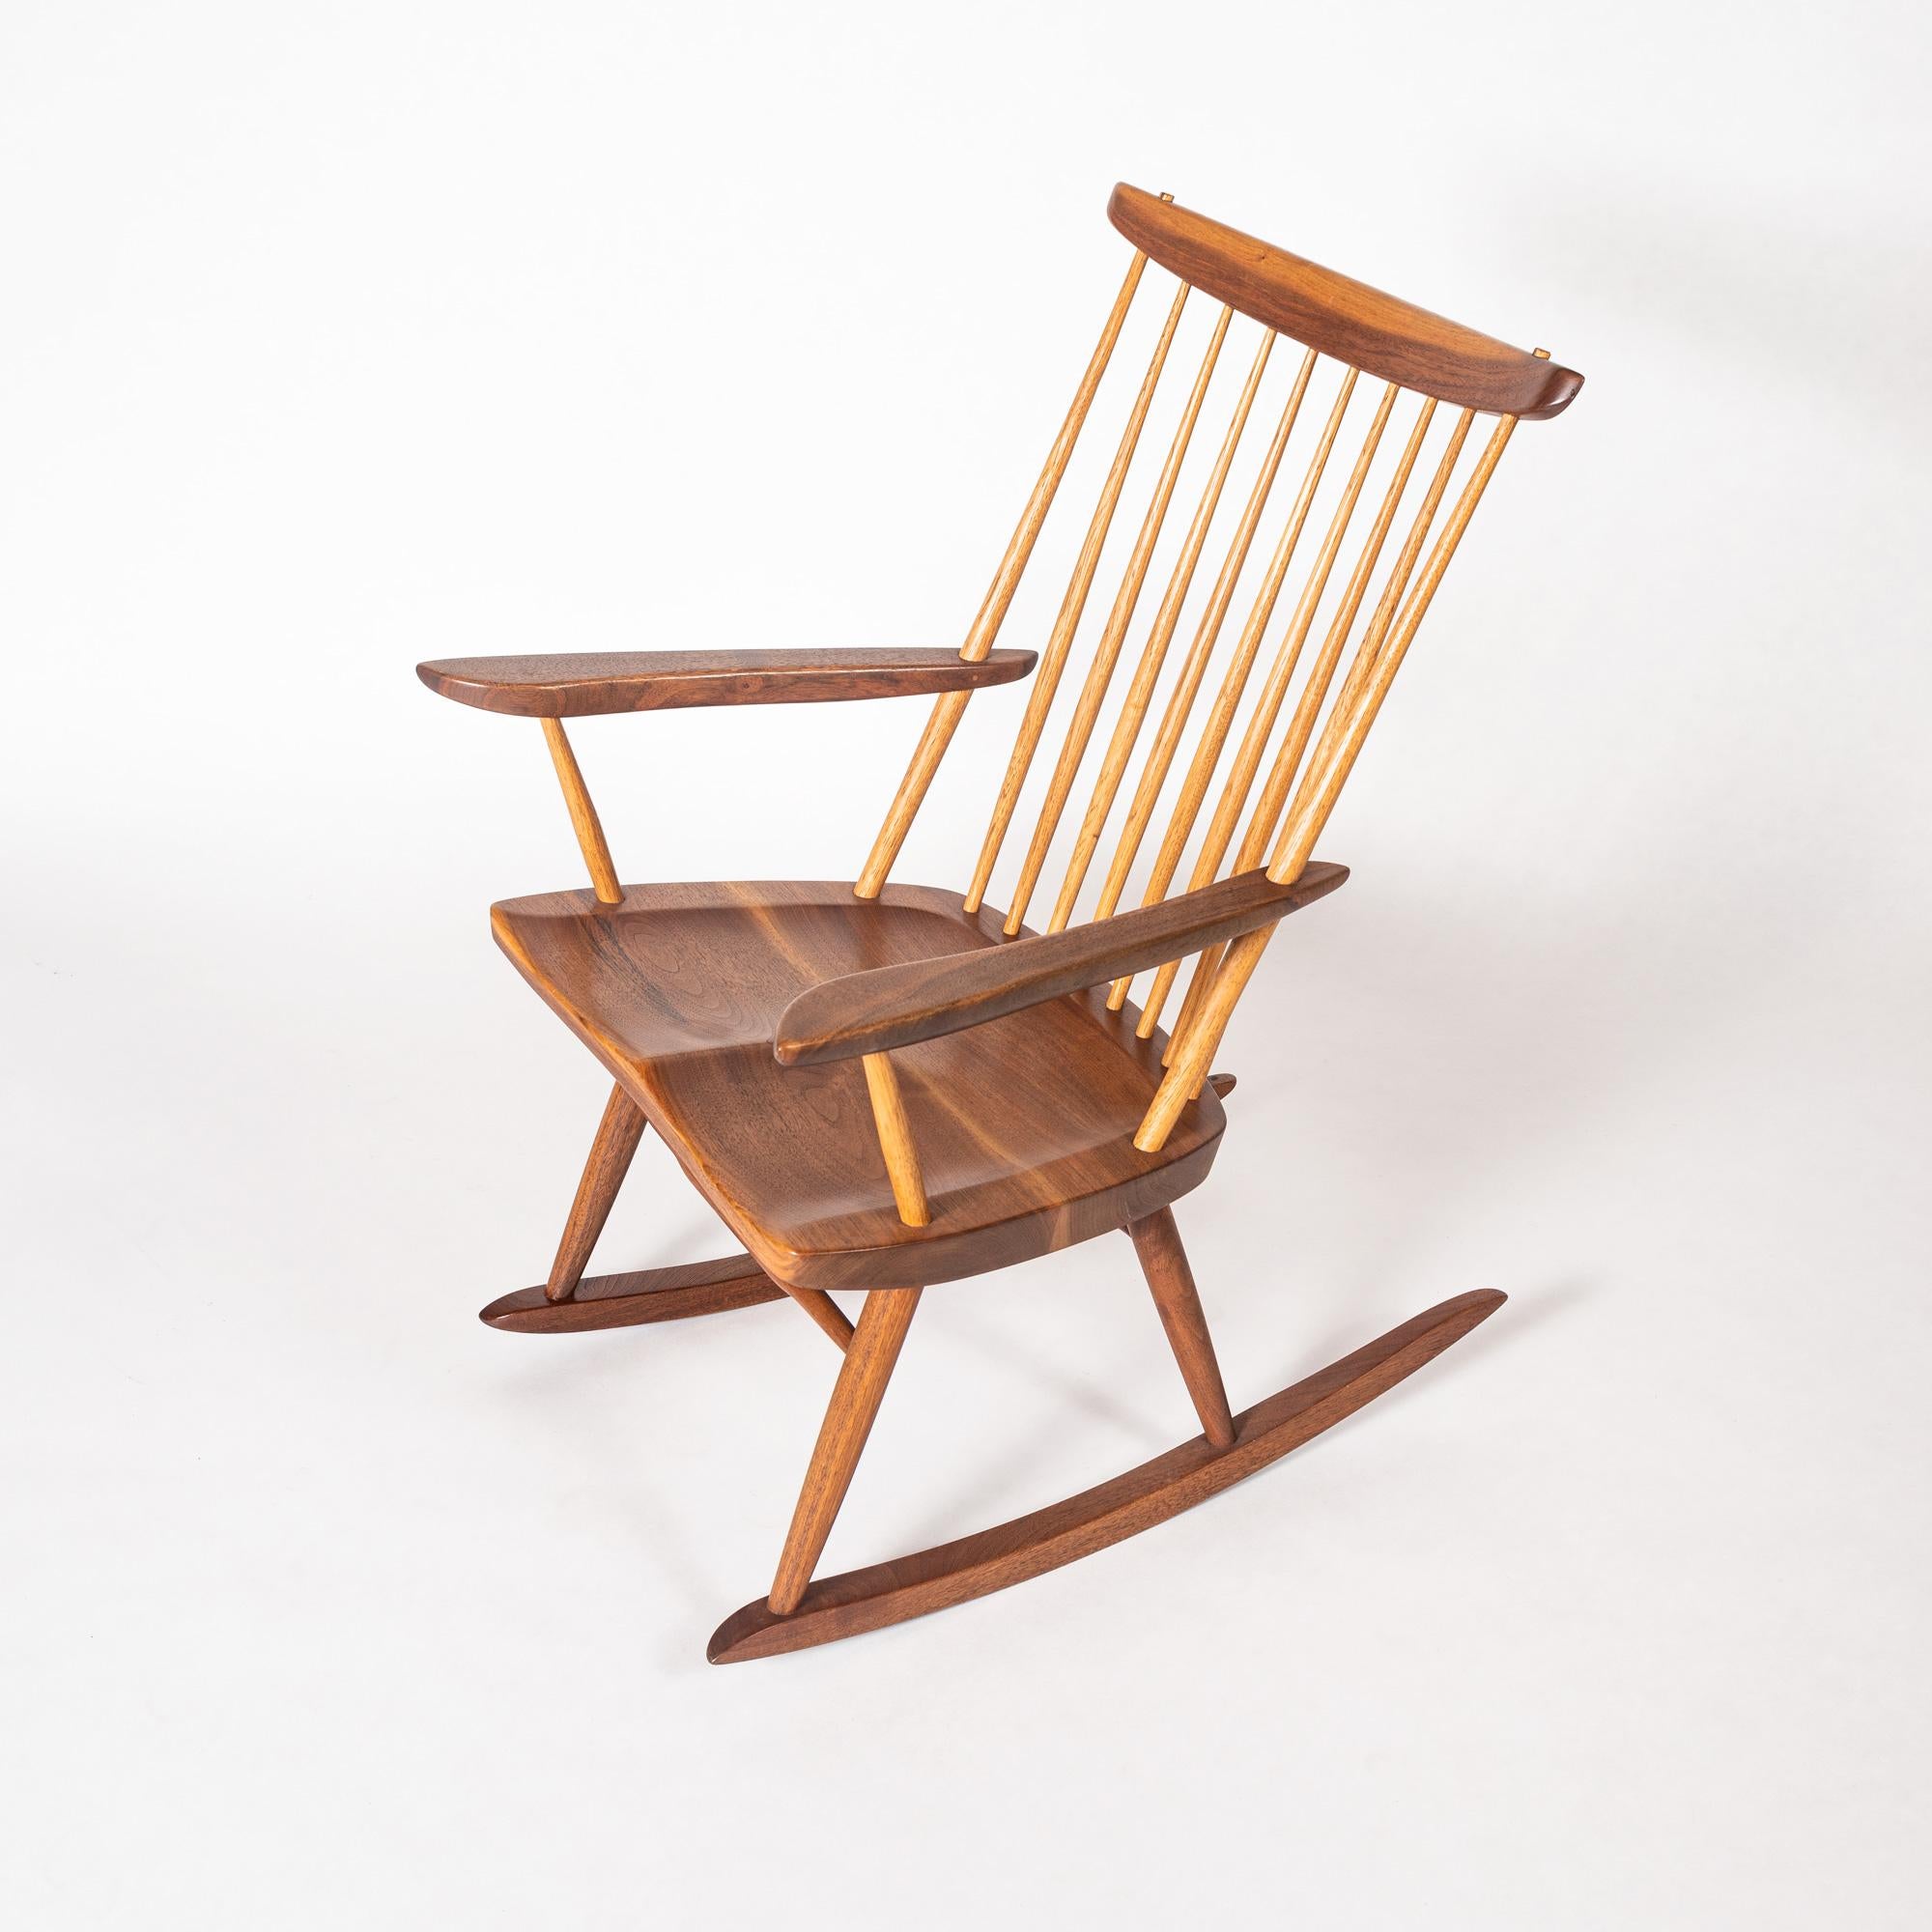 American Craftsman George Nakashima Rocking Chair